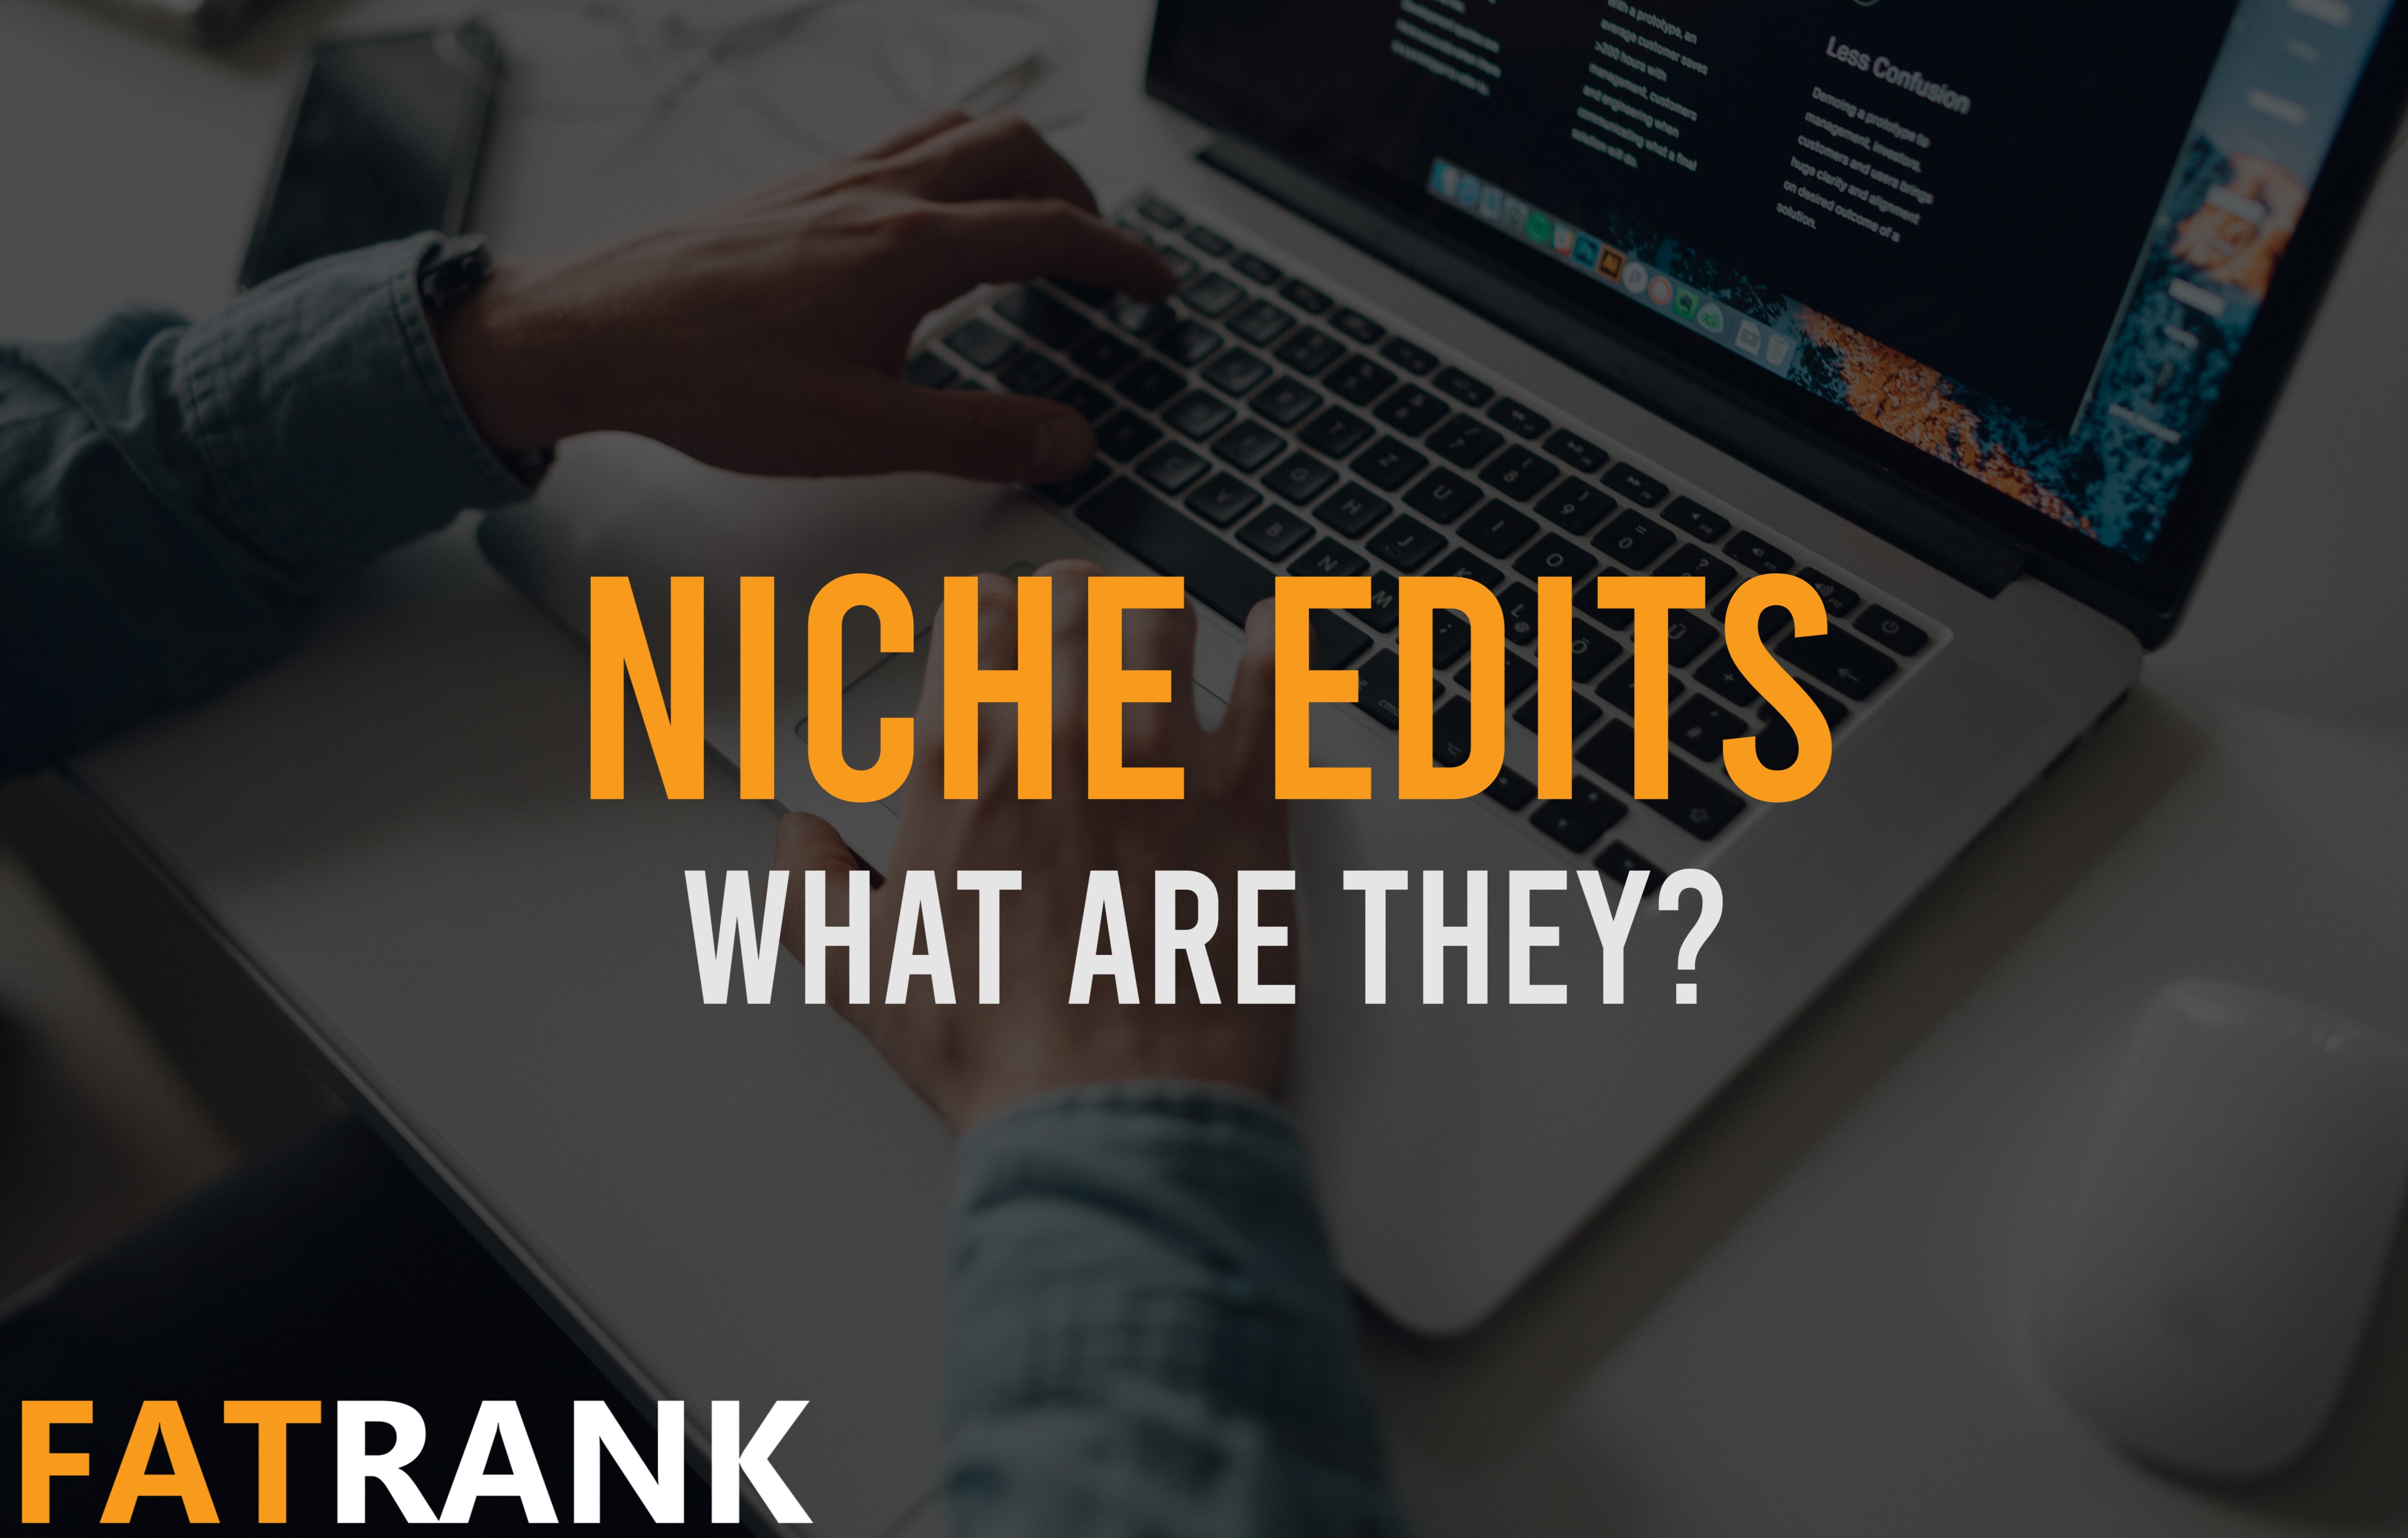 What Are Niche Edits